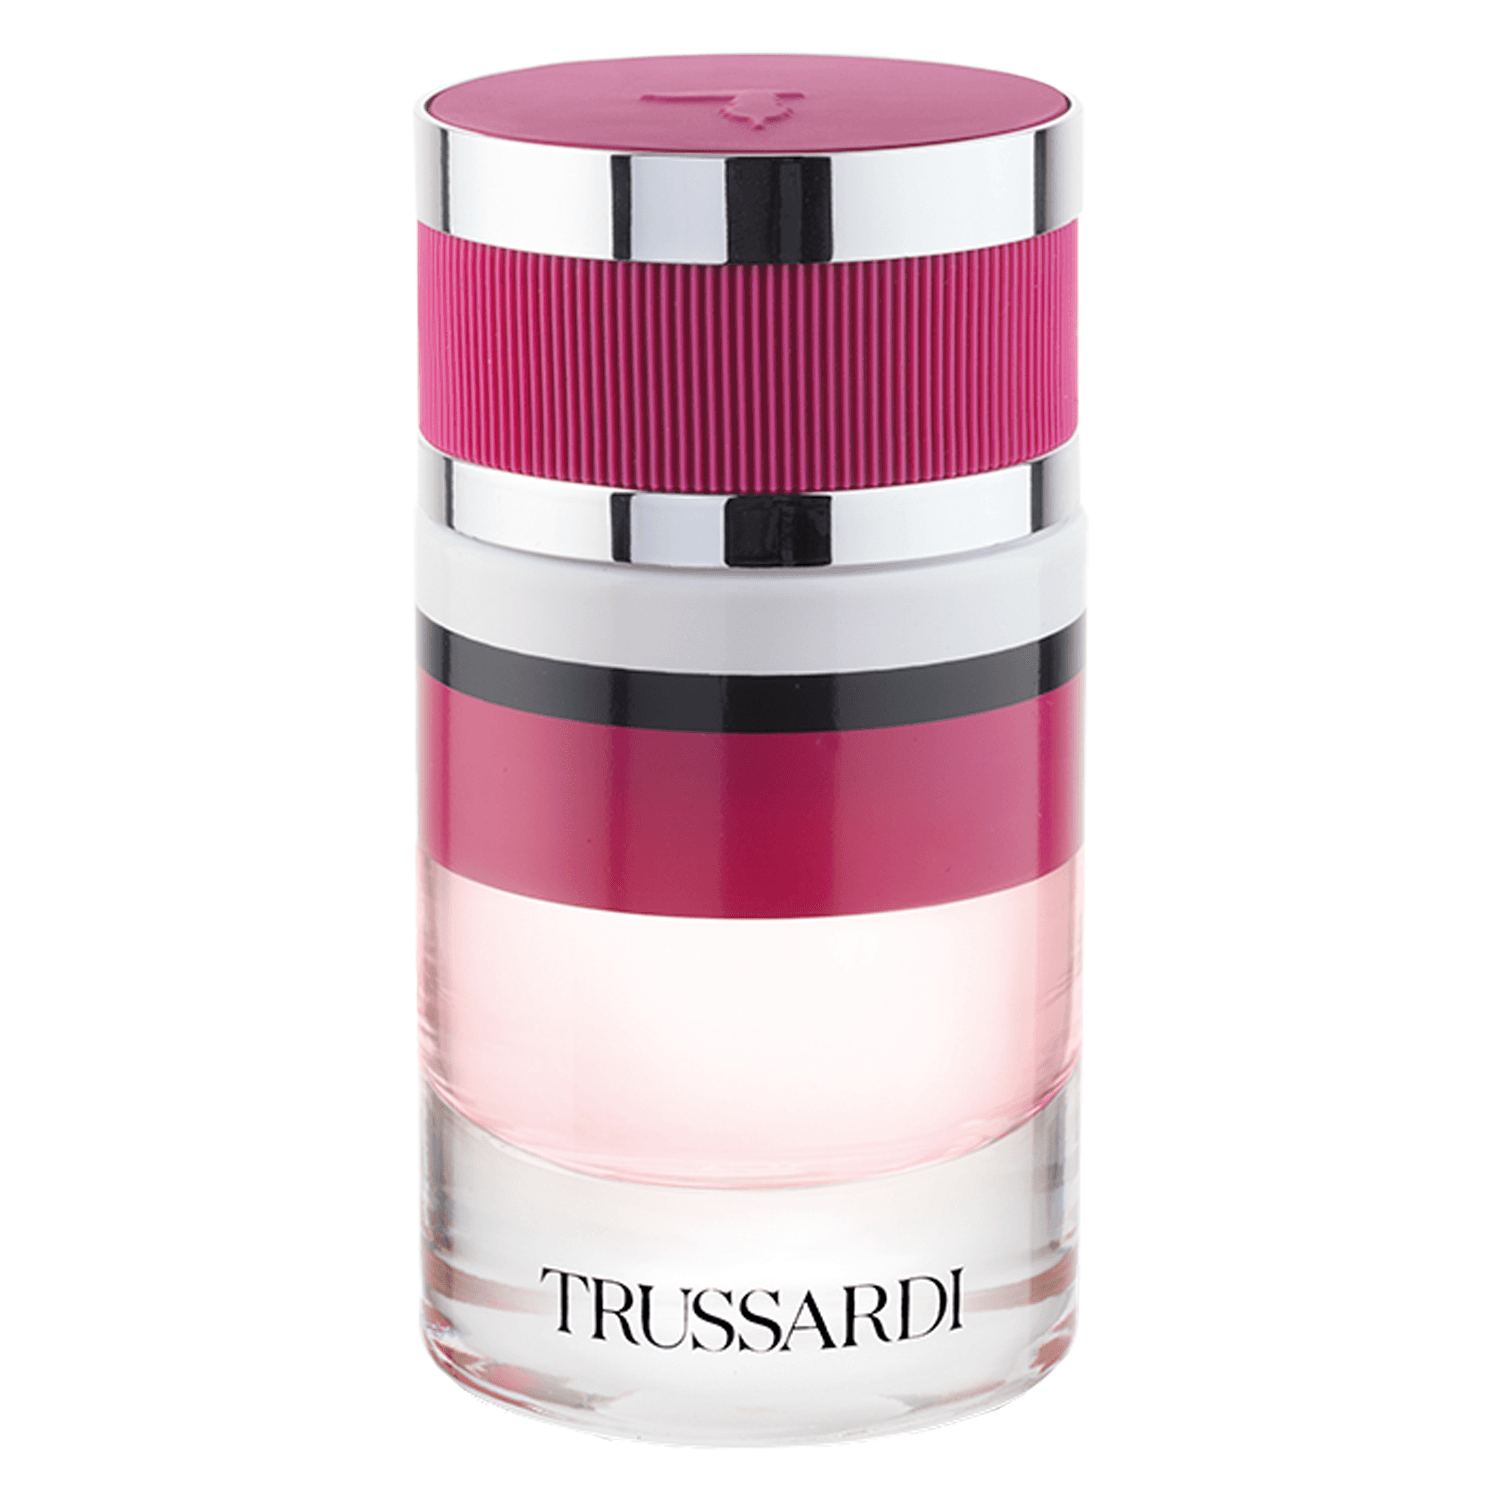 Trussardi - Ruby Red Eau de Parfum